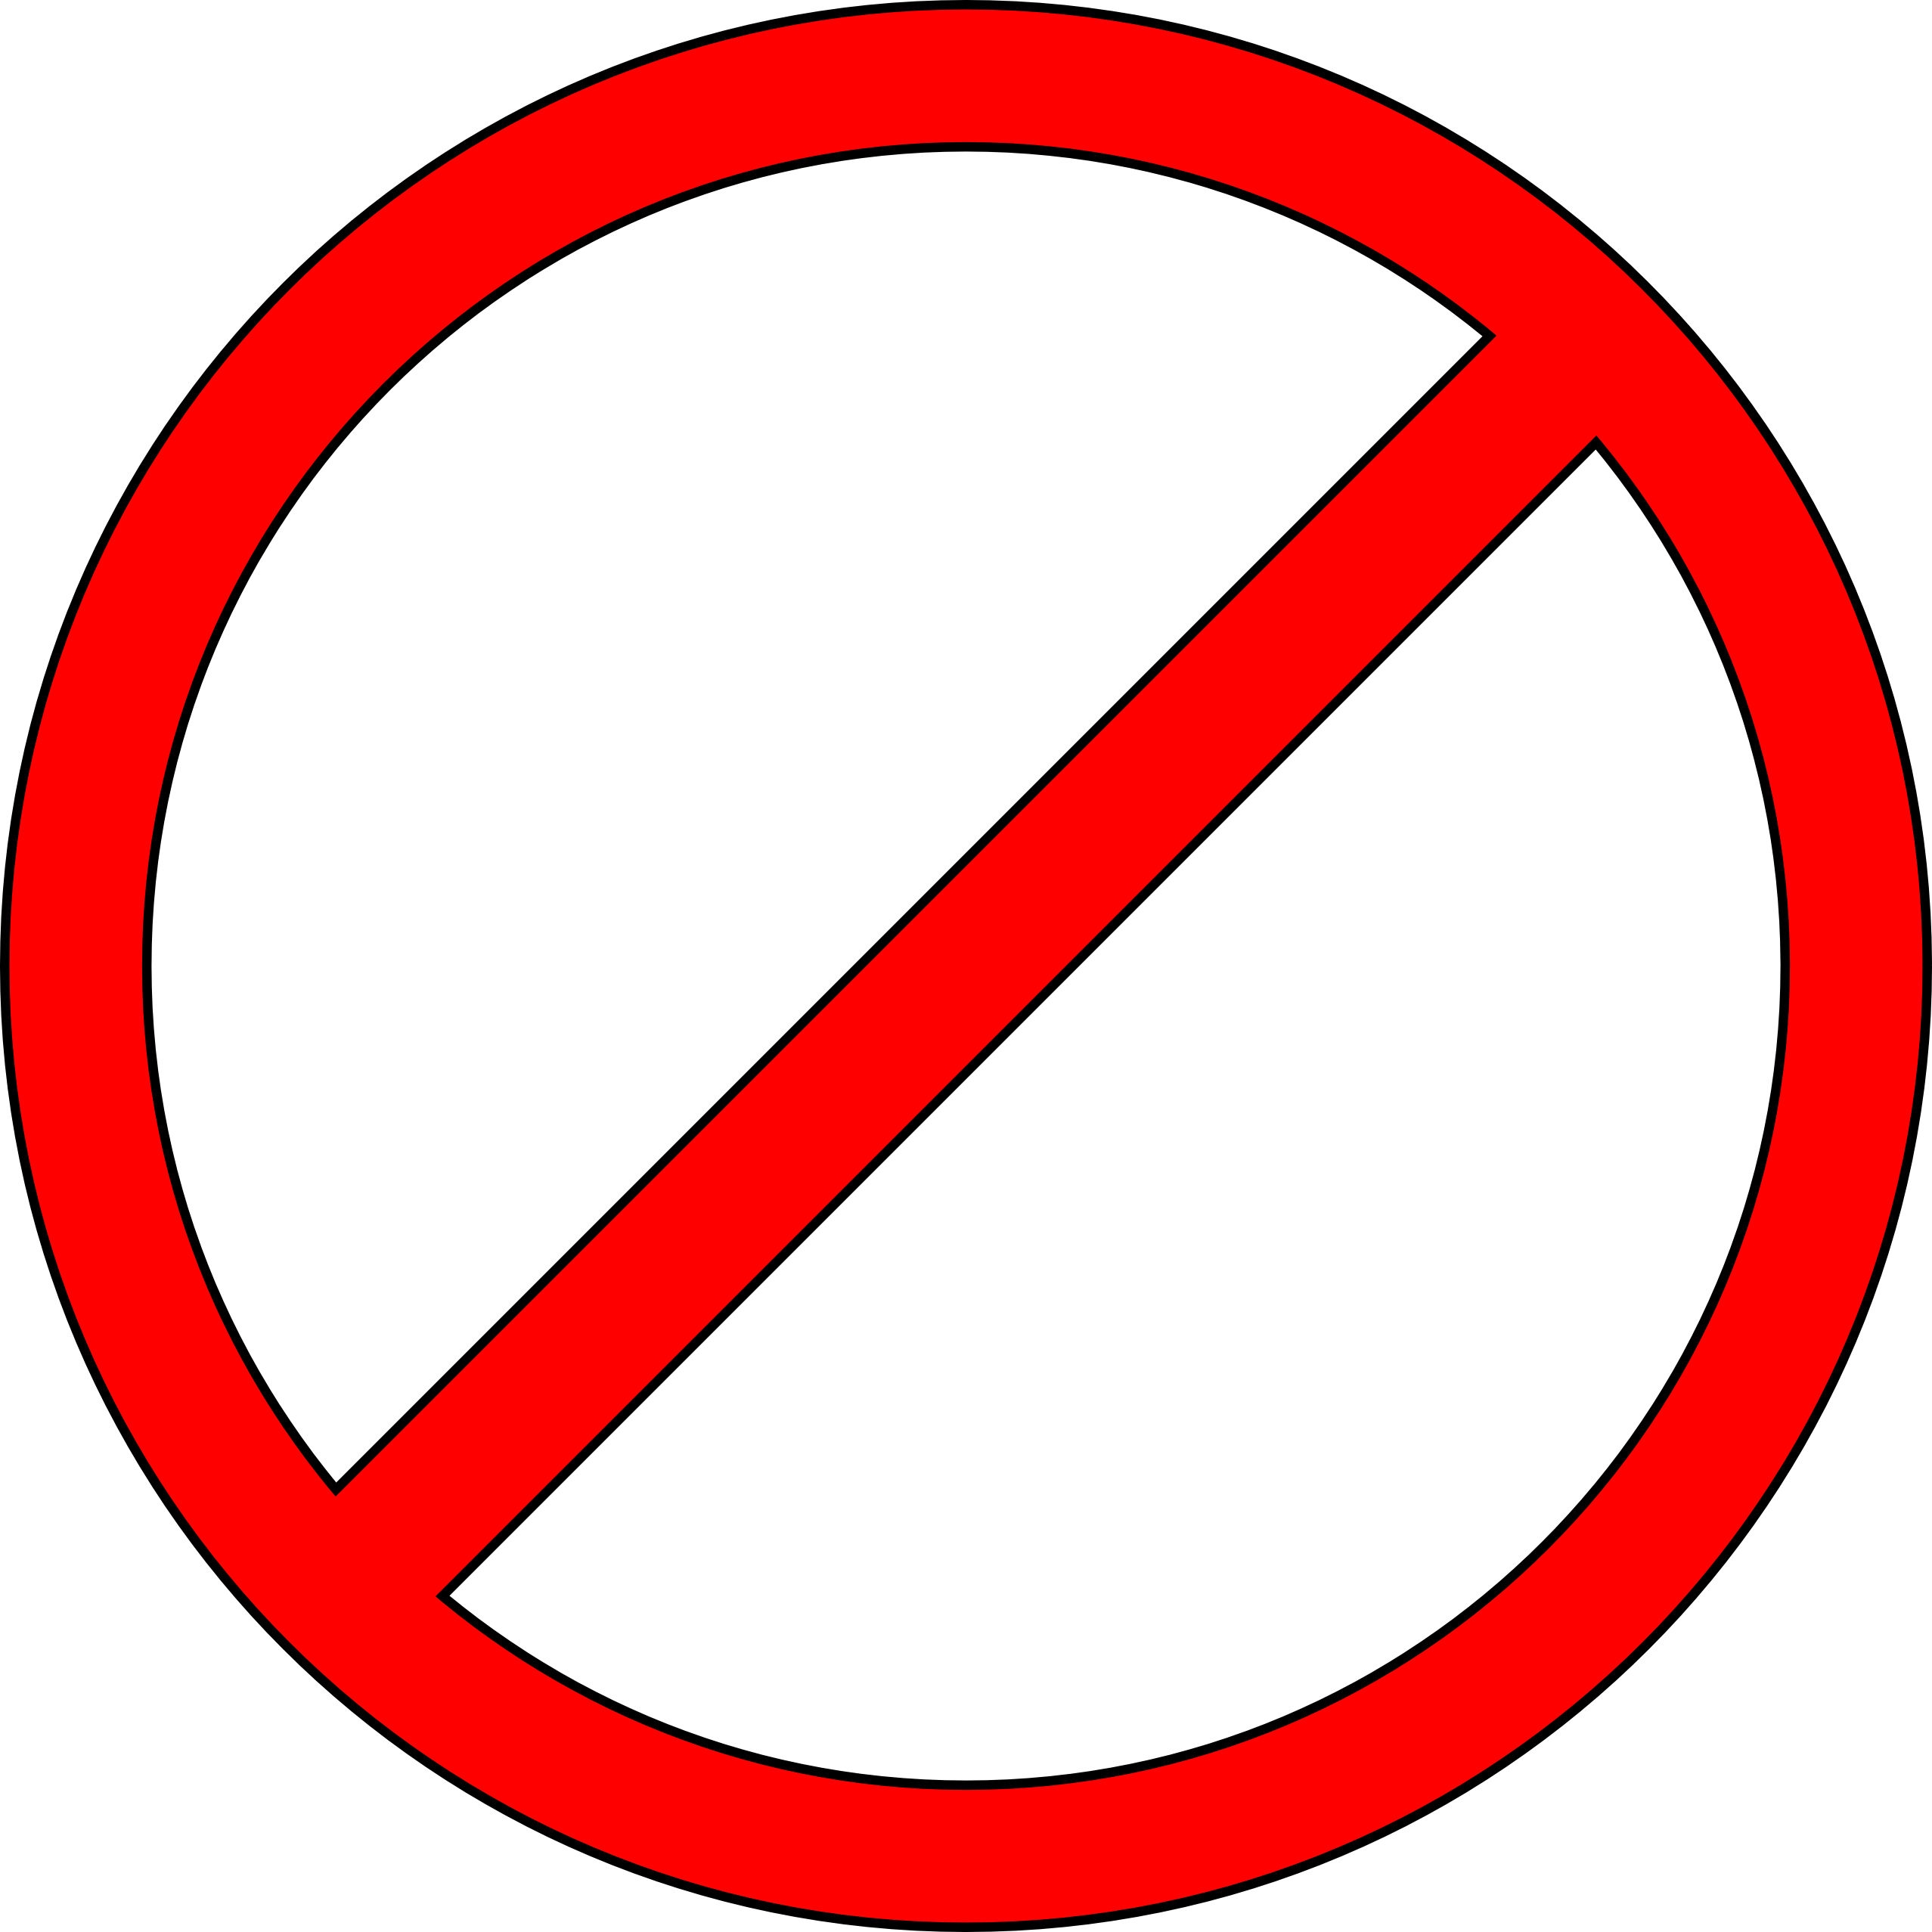 Do not use sign clip art - ClipartFox